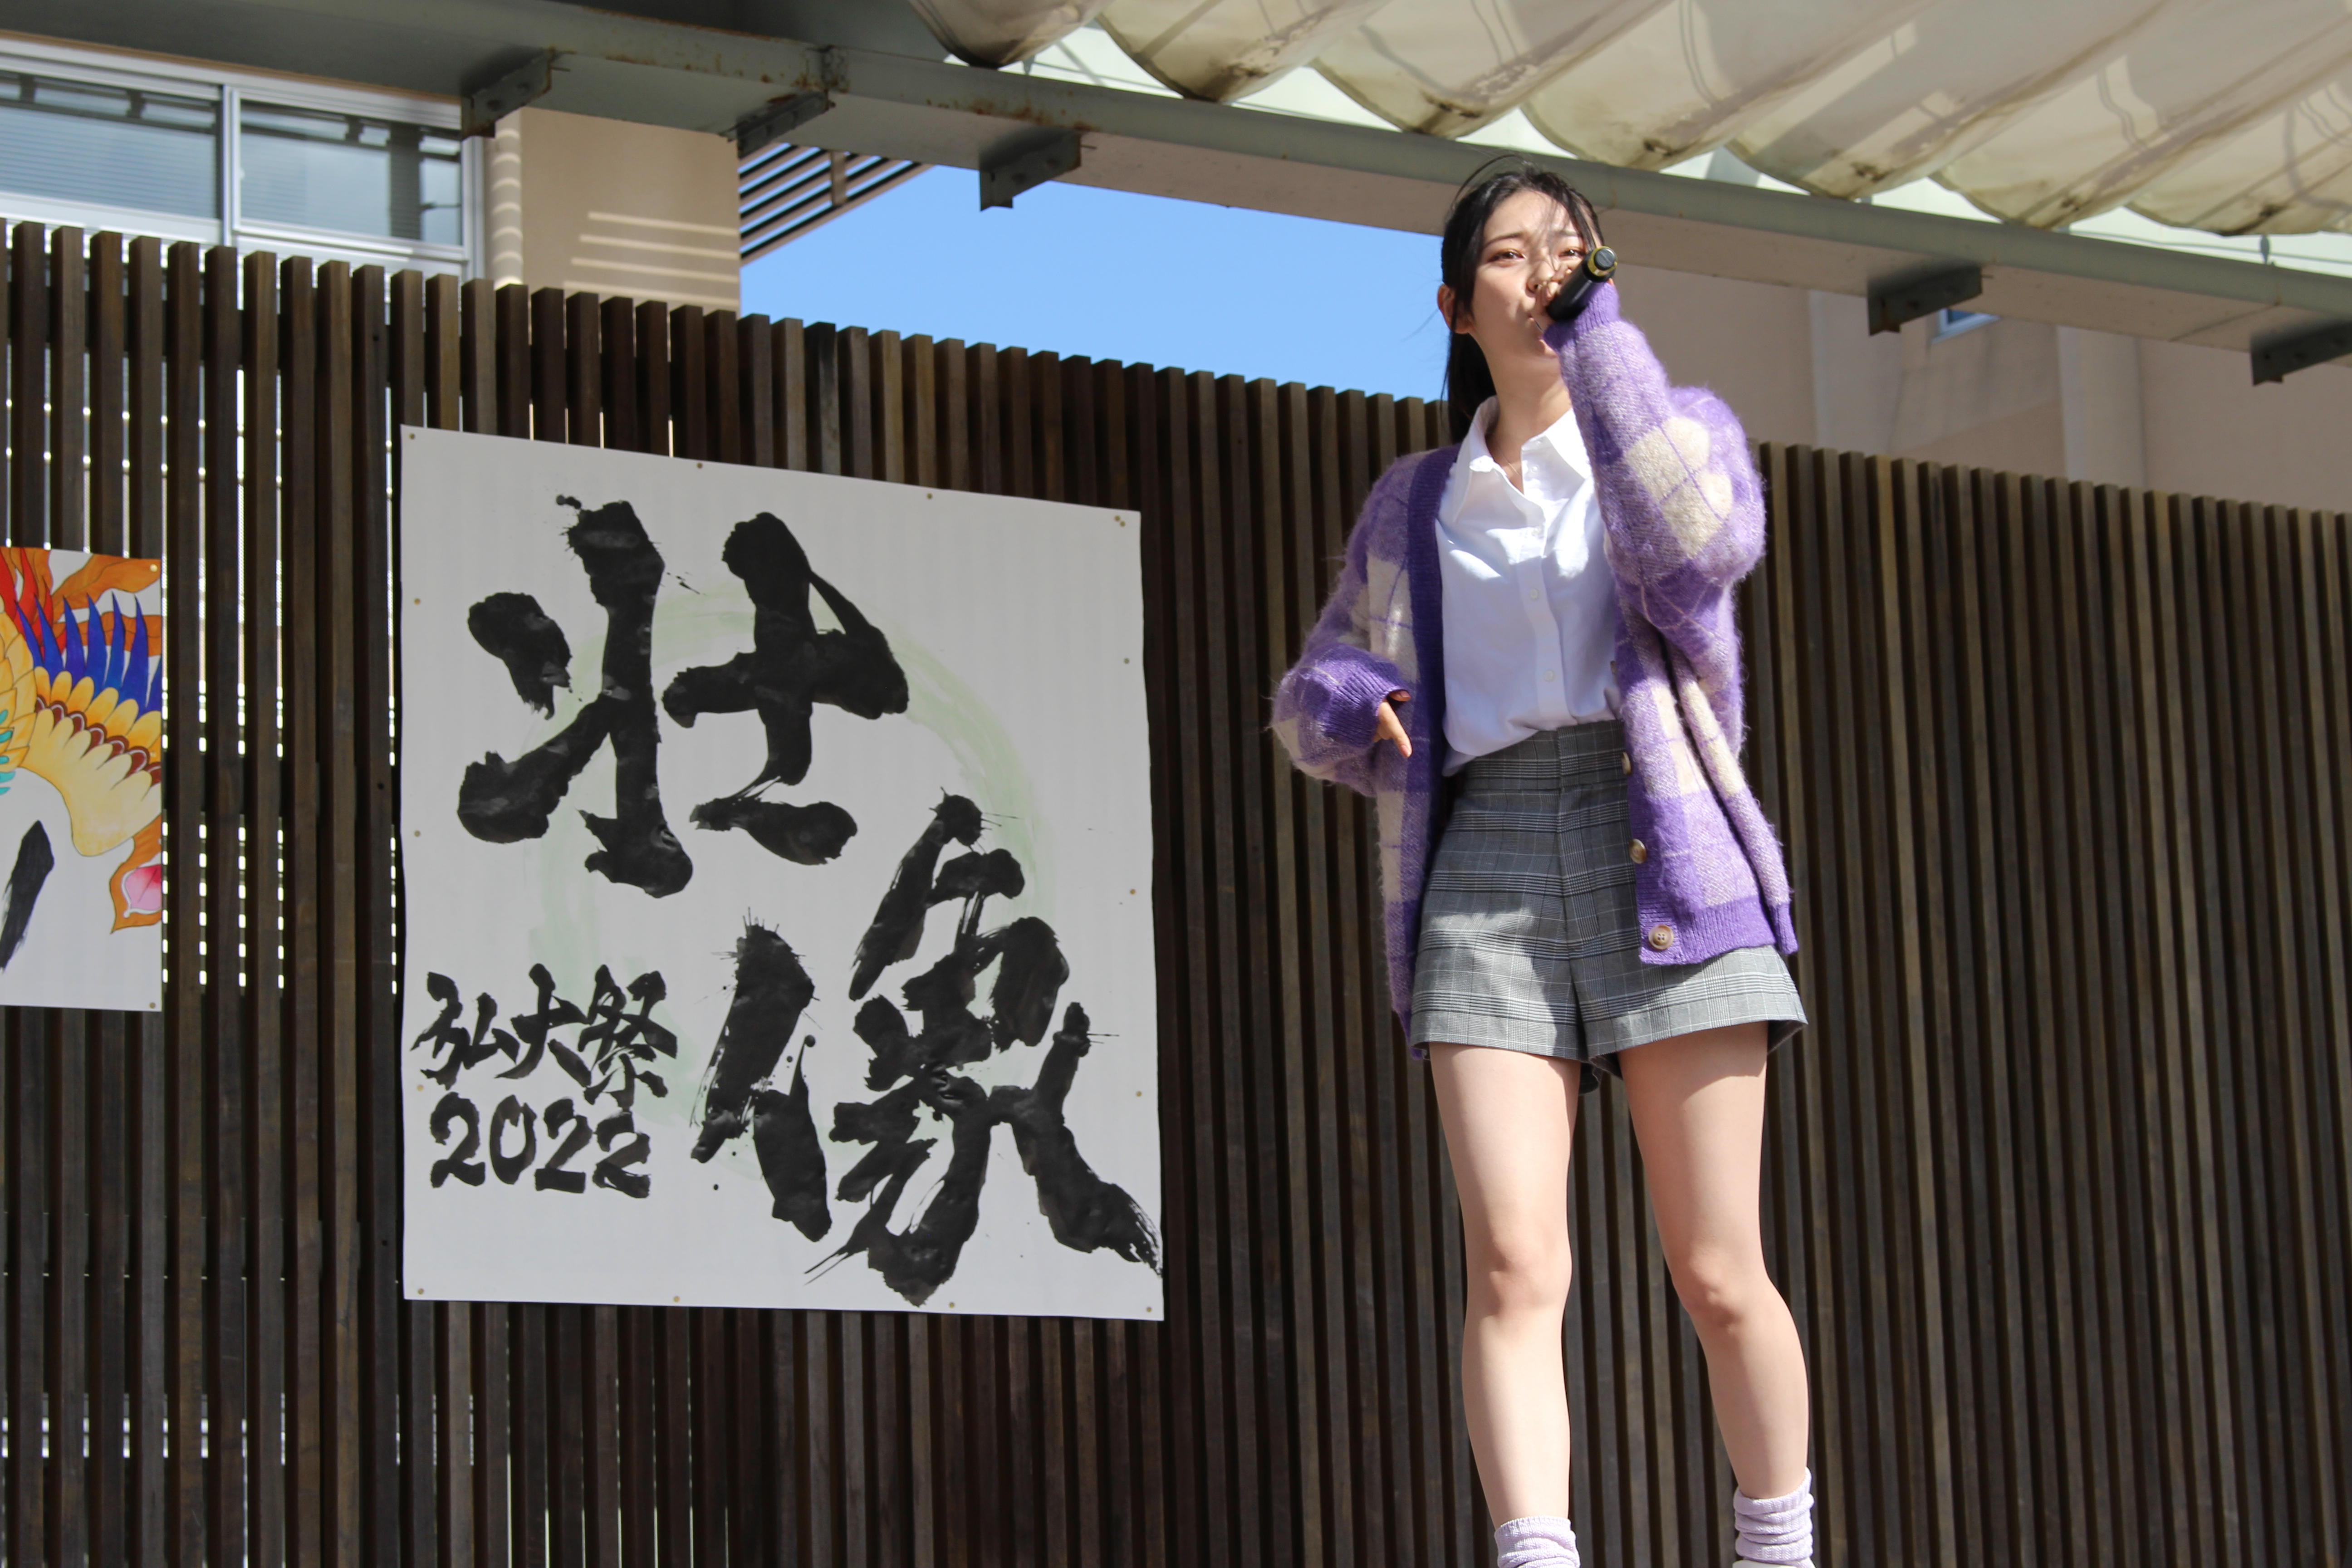 弘前大学が「第21回総合文化祭」を開催 -- 3年ぶりの対面形式で実施、テーマは「壮像 -- ソウゾウ -- 」